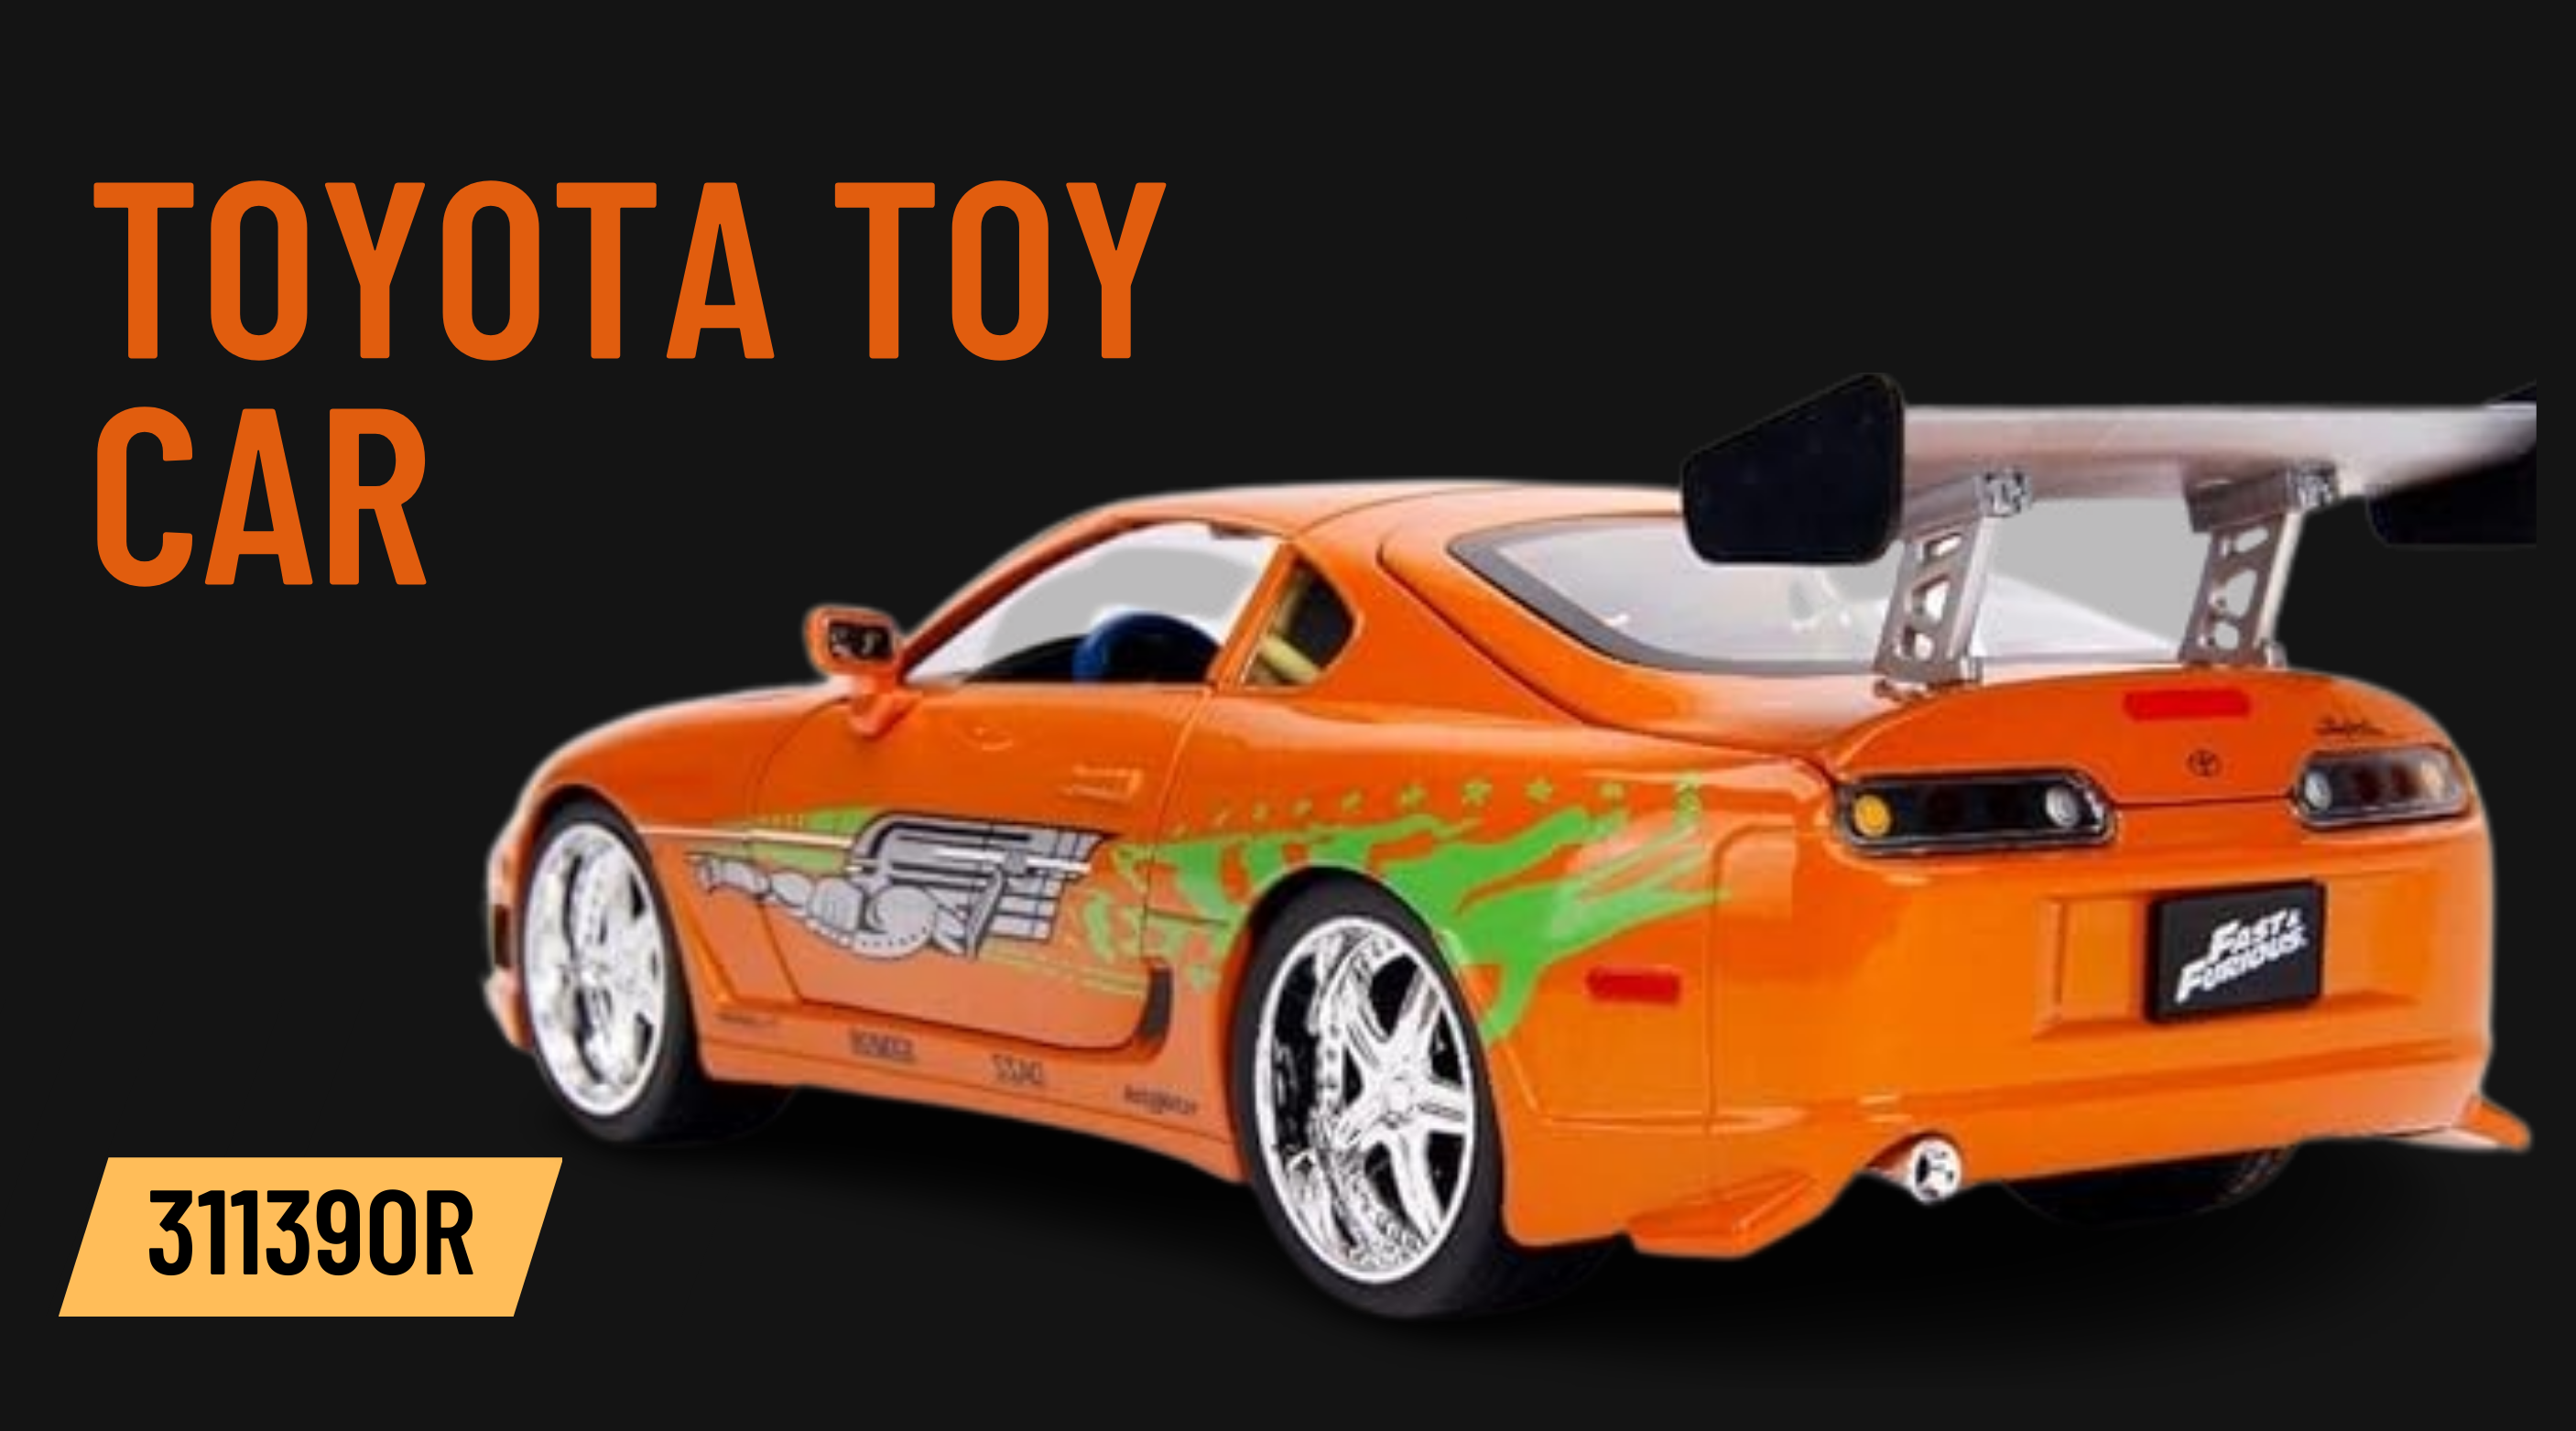 Toyota Toy Car